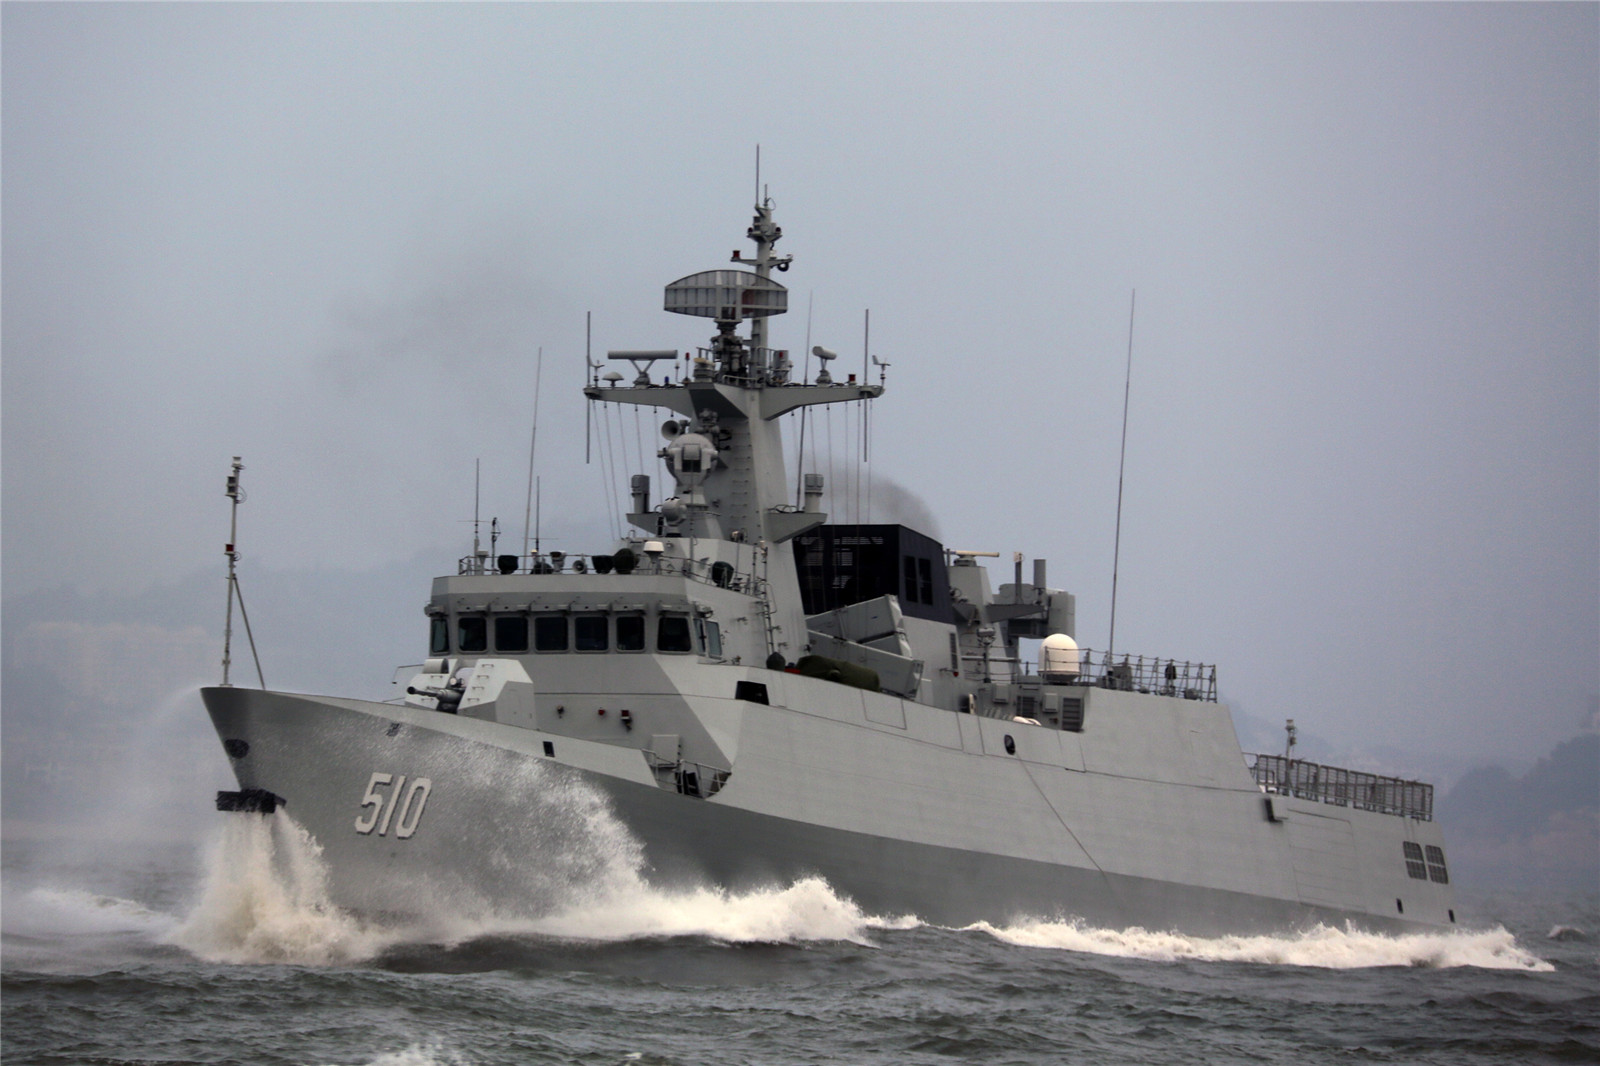 中国海军东海舰队宁德号056型轻型护卫舰于1月15日在海上复杂严重